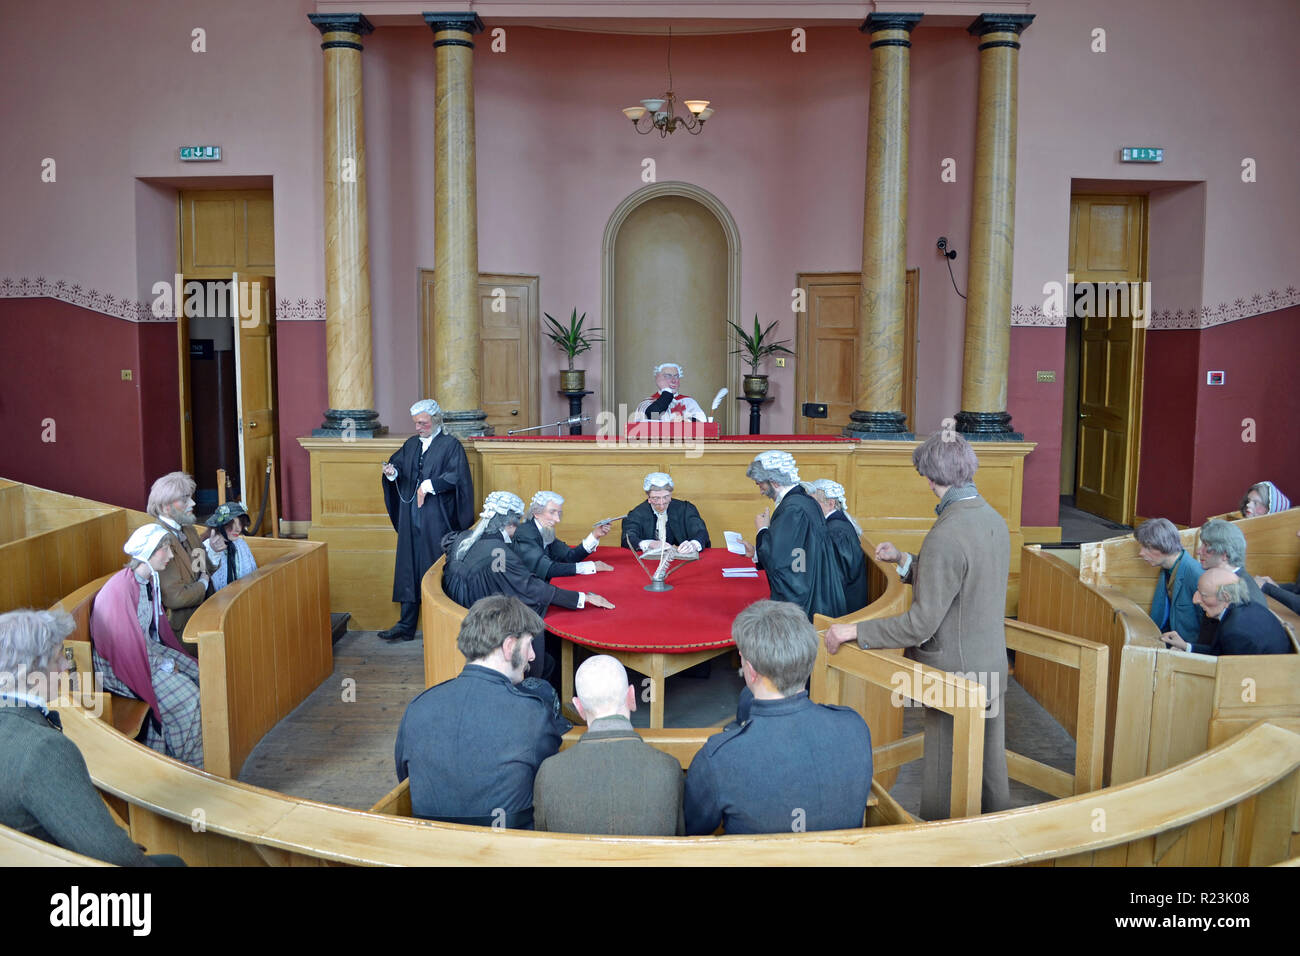 Court room at Inveraray Jail, Inveraray, Argyll, Scotland, UK Stock Photo